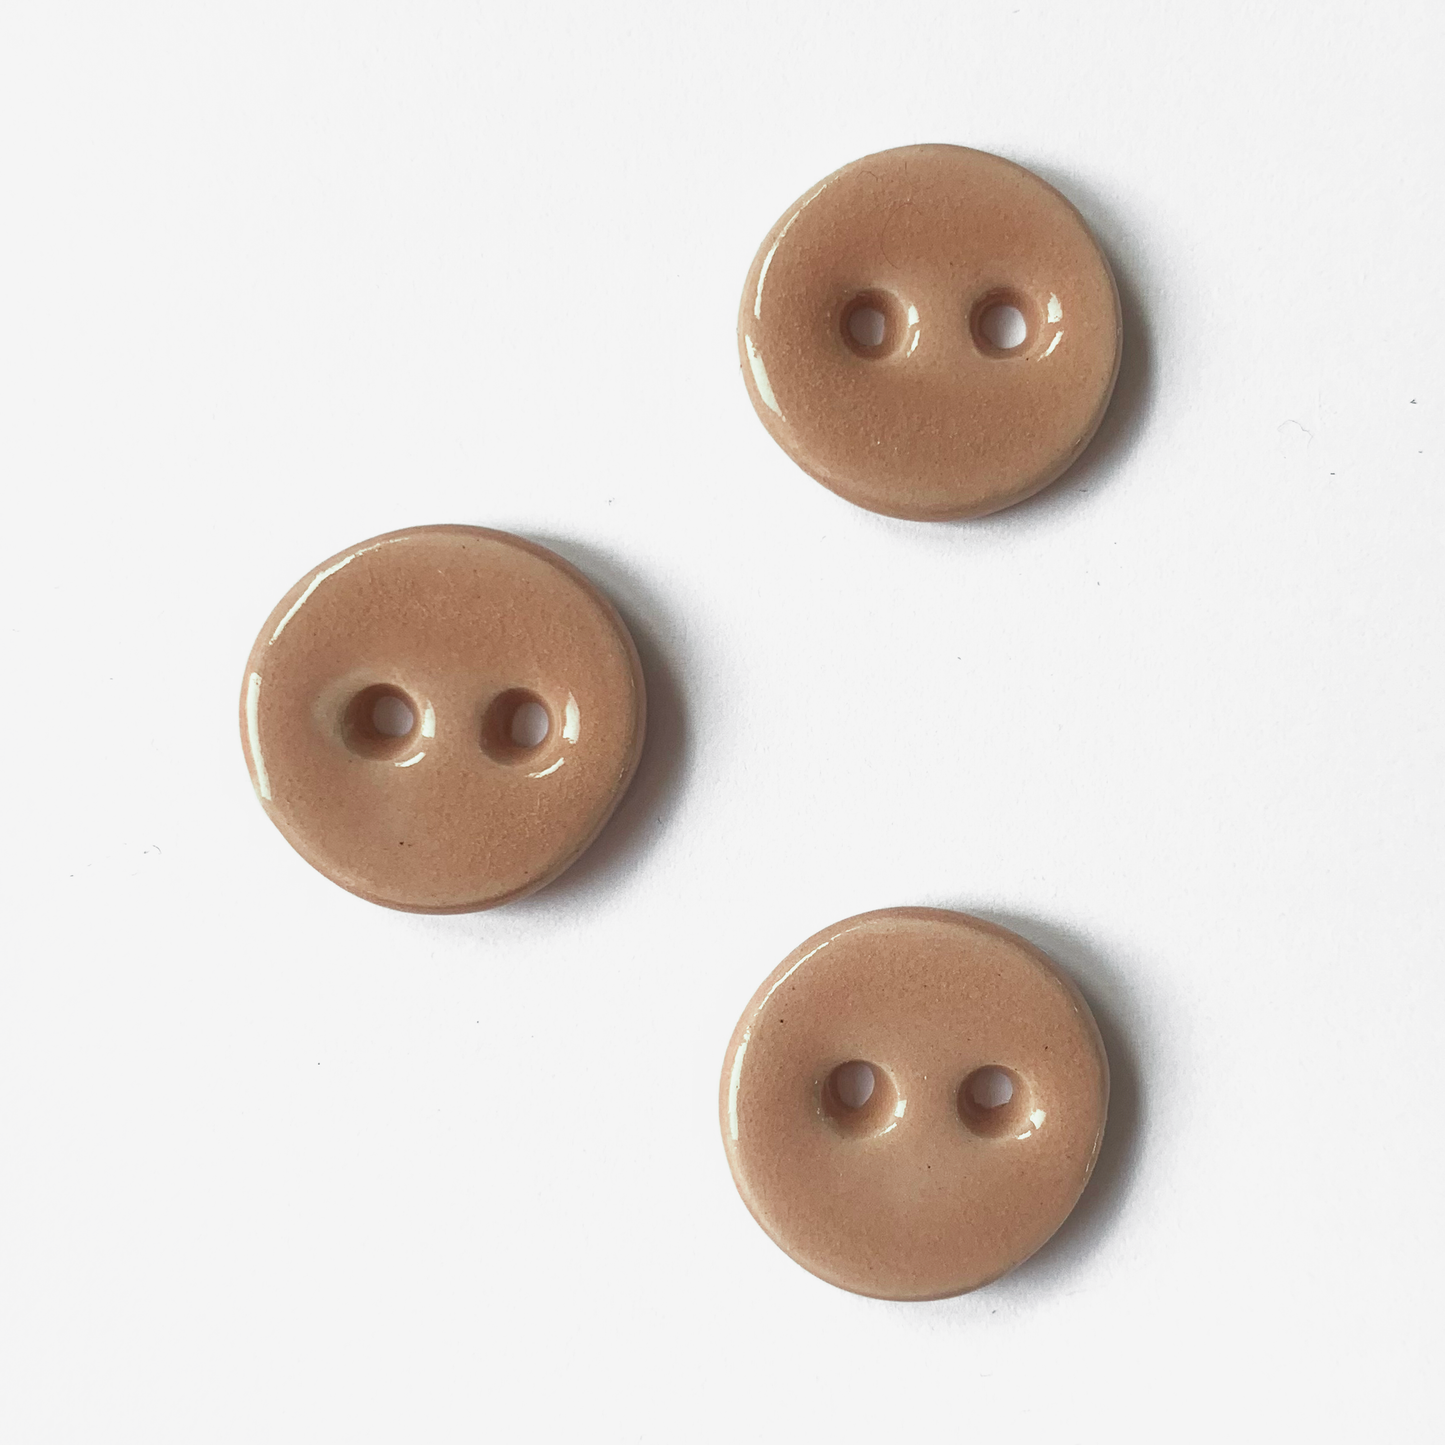 Desert Rose - Ceramic Buttons